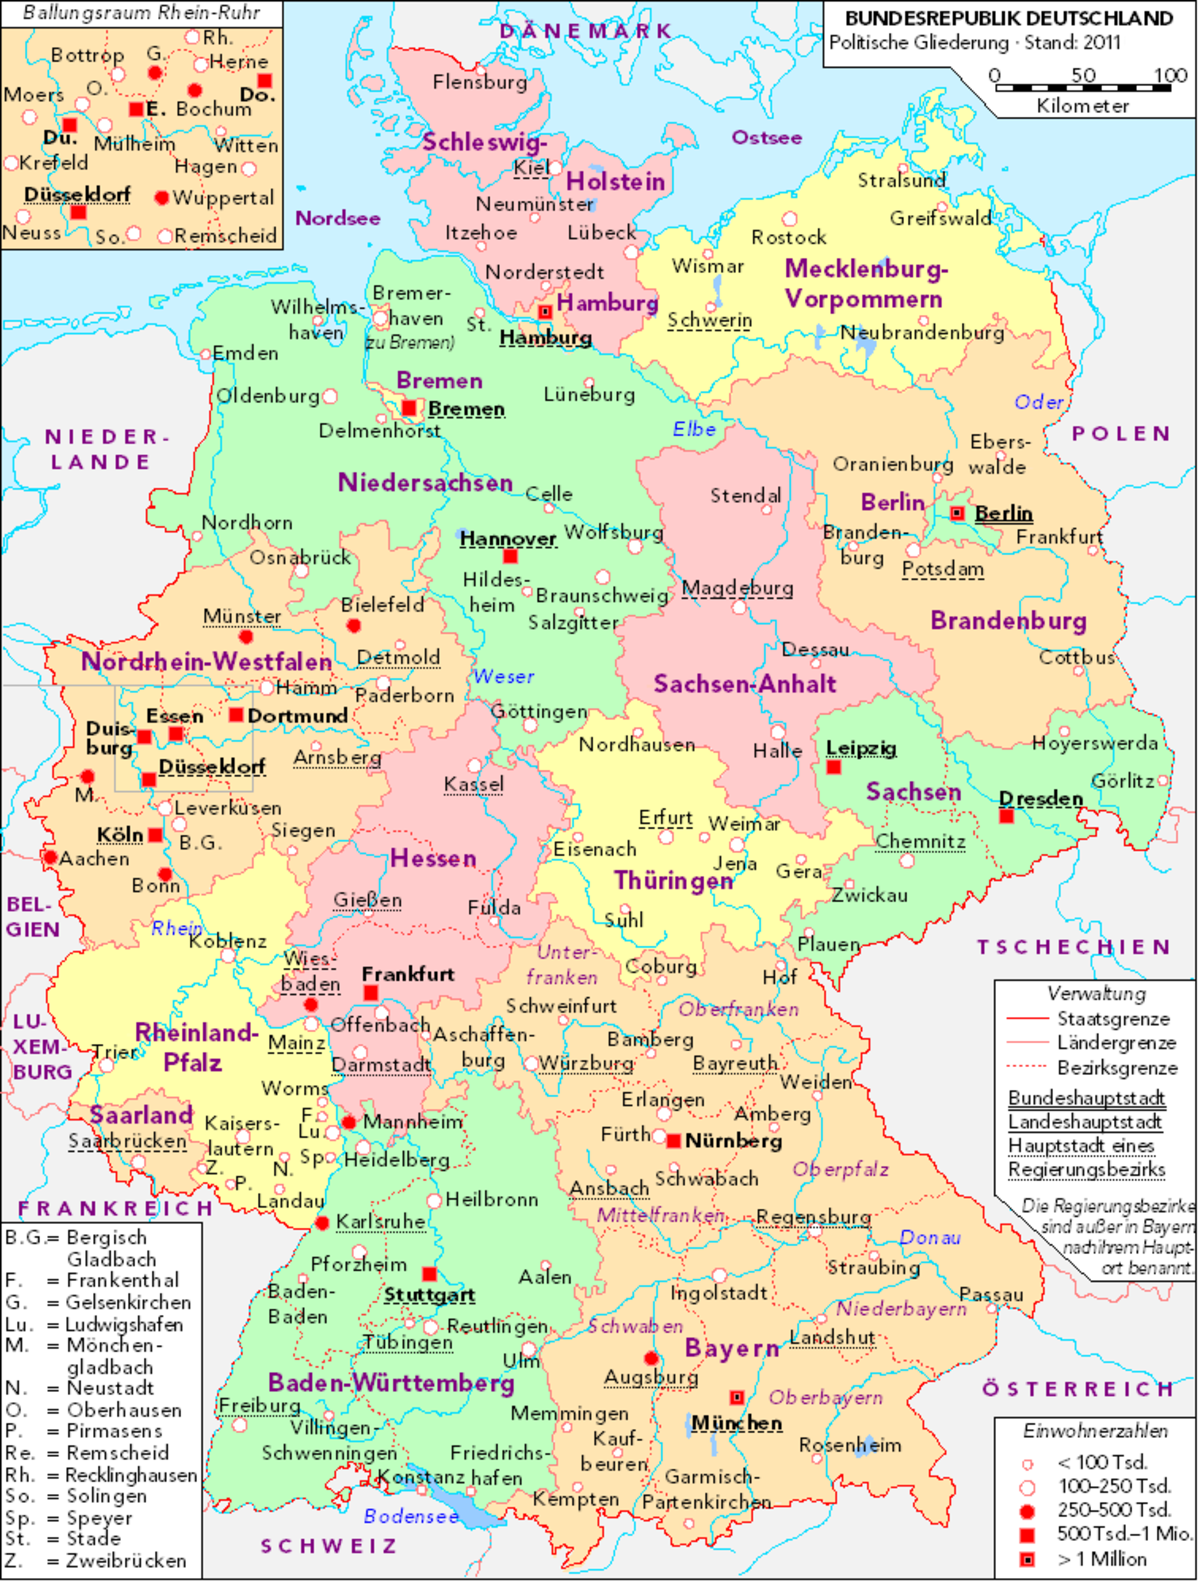 Нюрнберг на карте германии. Франкфурт-на-Майне на карте Германии. Франкфурт на карте Германии. Frankfurt на карте Германии. Bundesrepublik Deutschland карта.